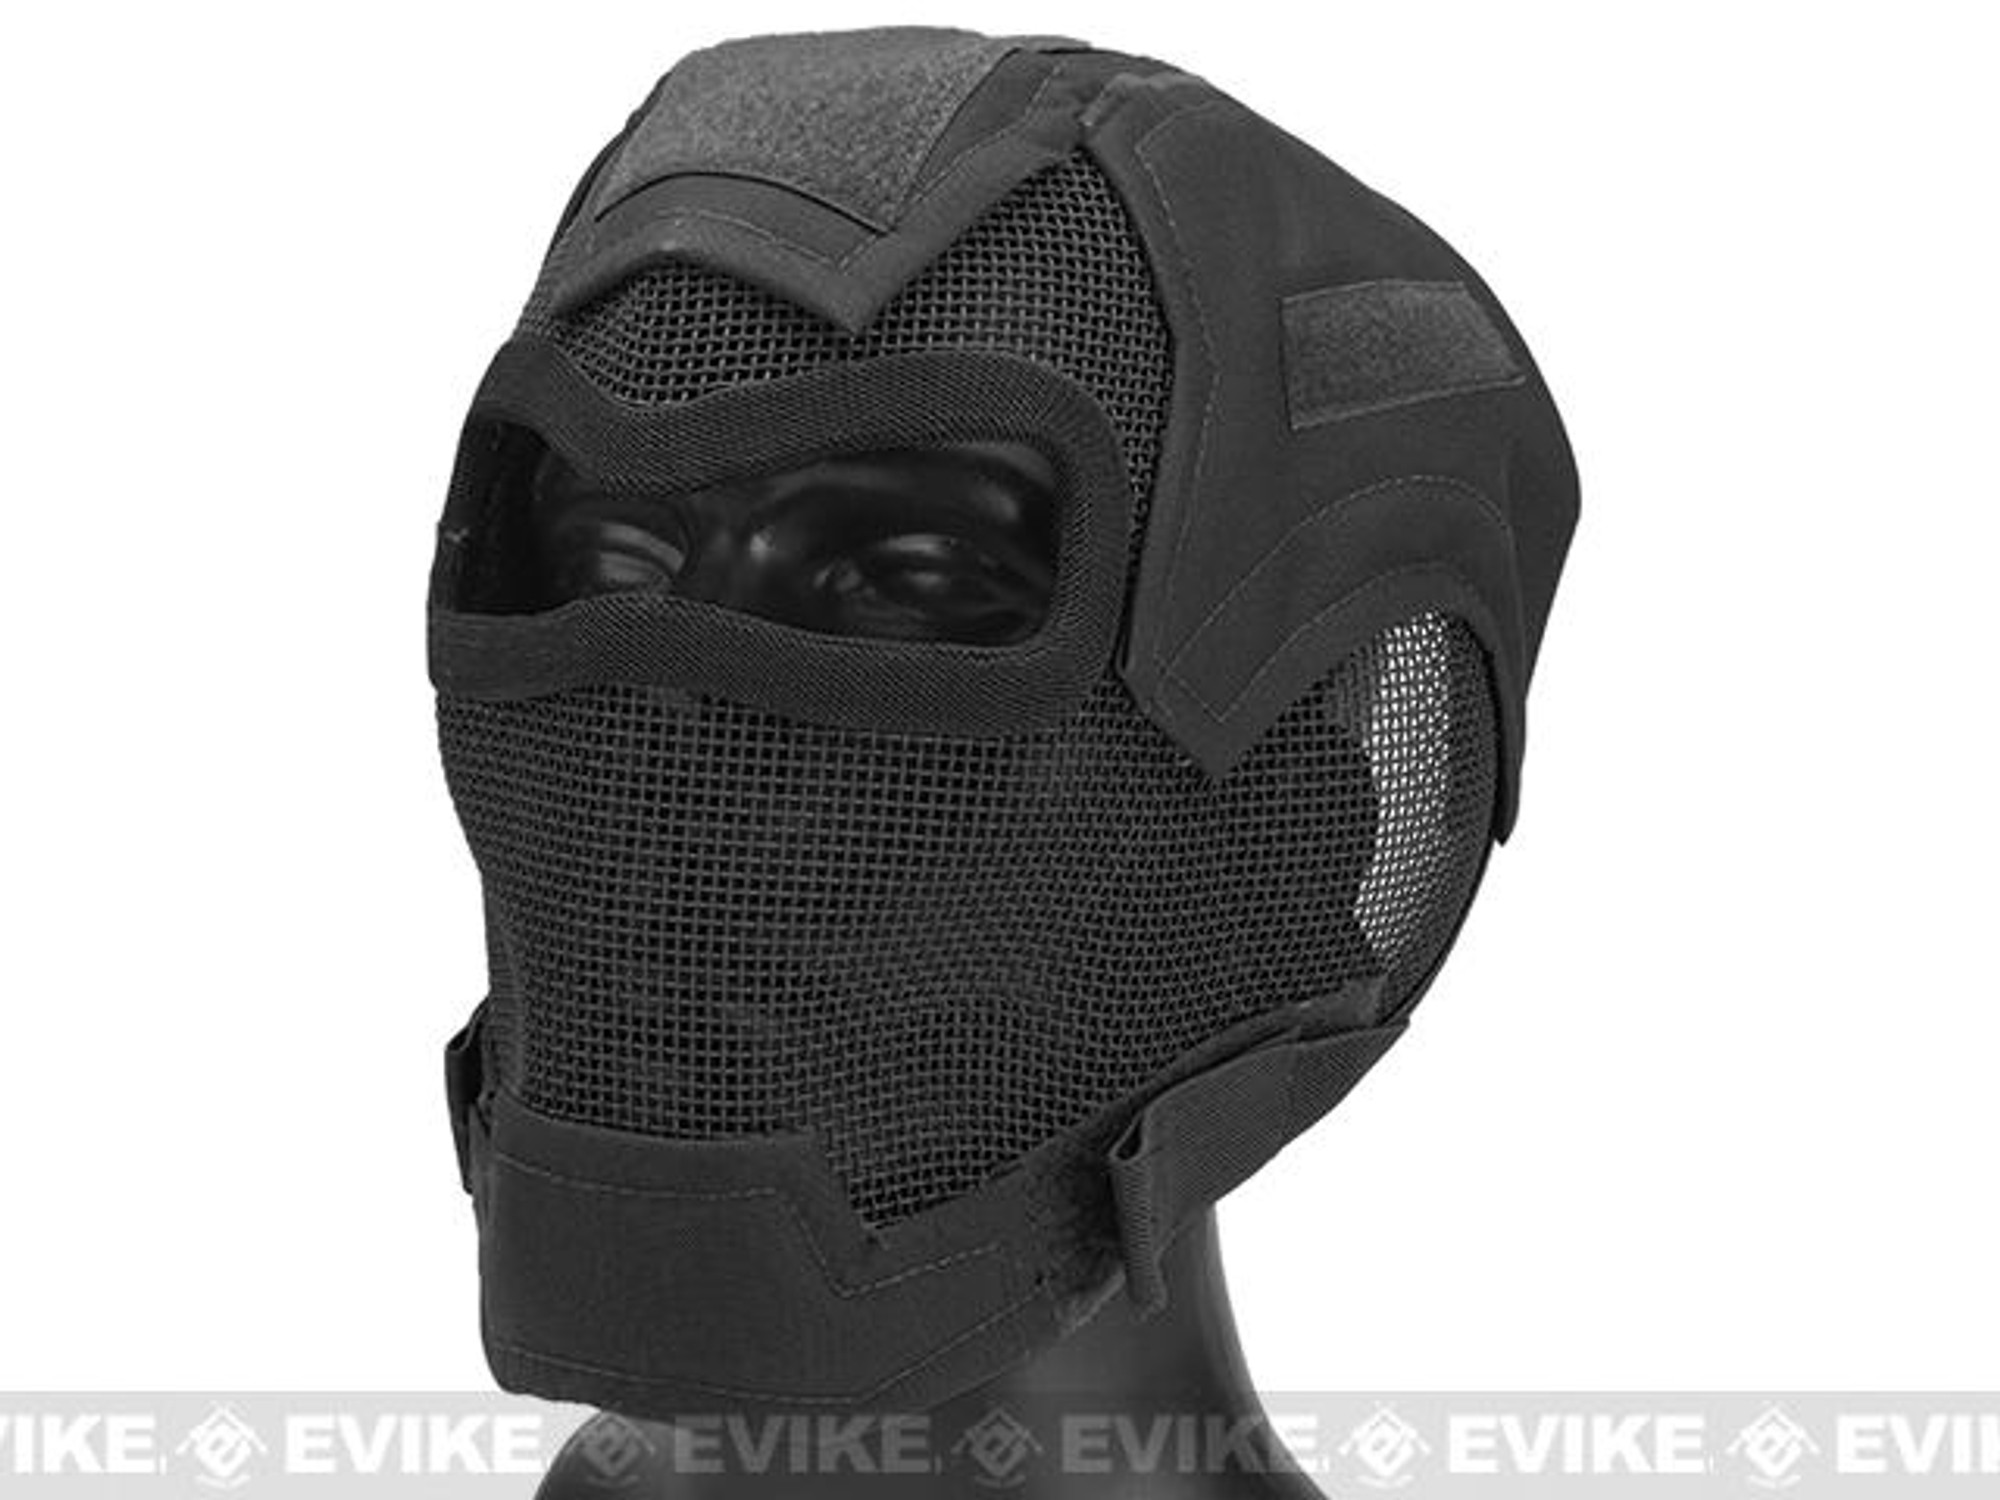 Matrix Iron Face Carbon Steel "Watcher" Gen7 Full Face Mask - Black